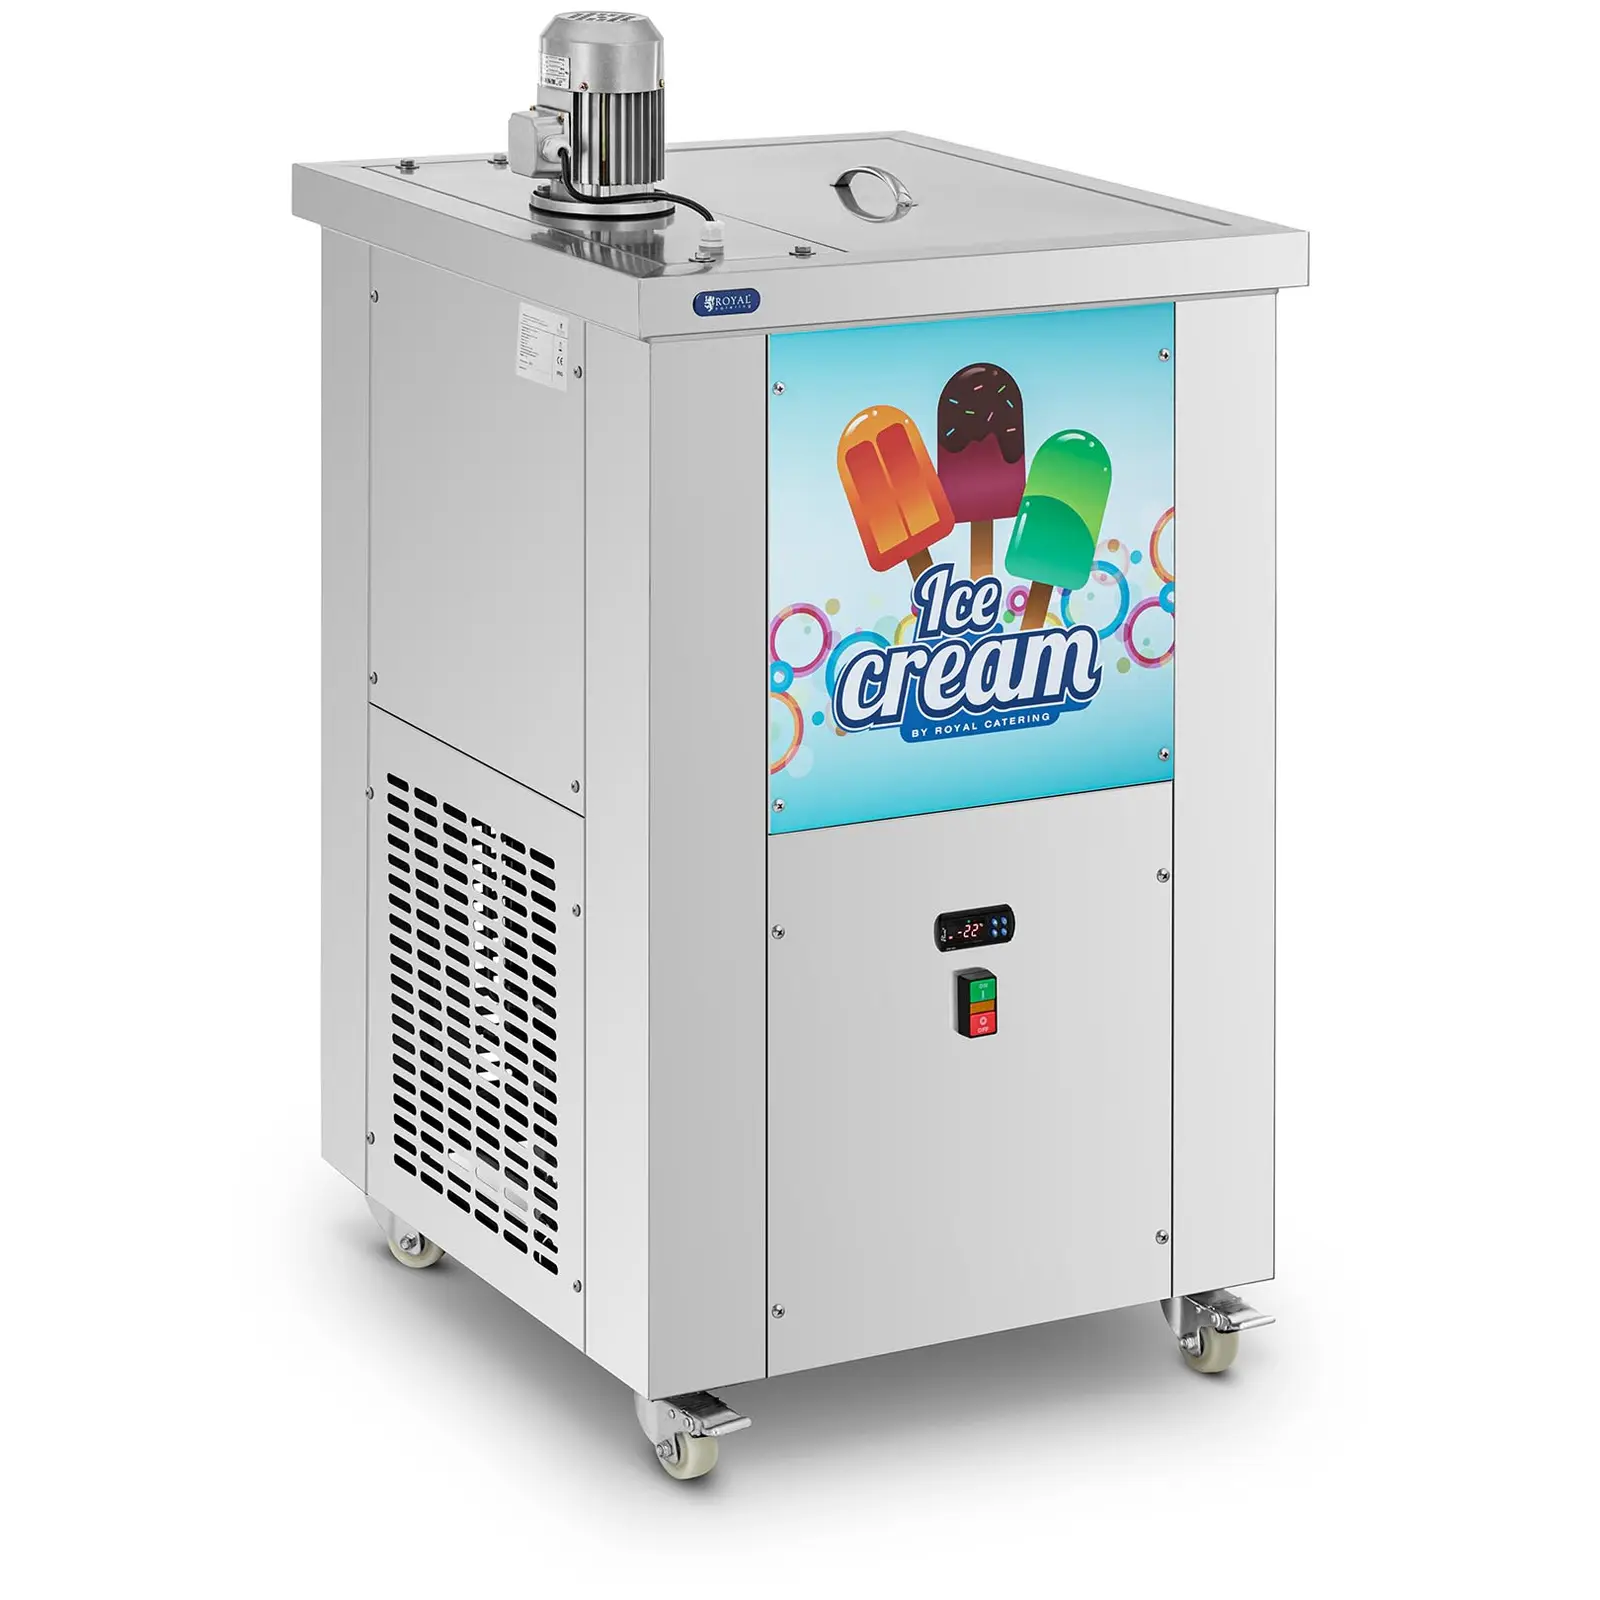 Eismaschine - für Eis am Stiel - 2 Formen: 75 + 110 ml - 80 Stück (15 min) / 6000 Stück (Tag) - Royal Catering - 0